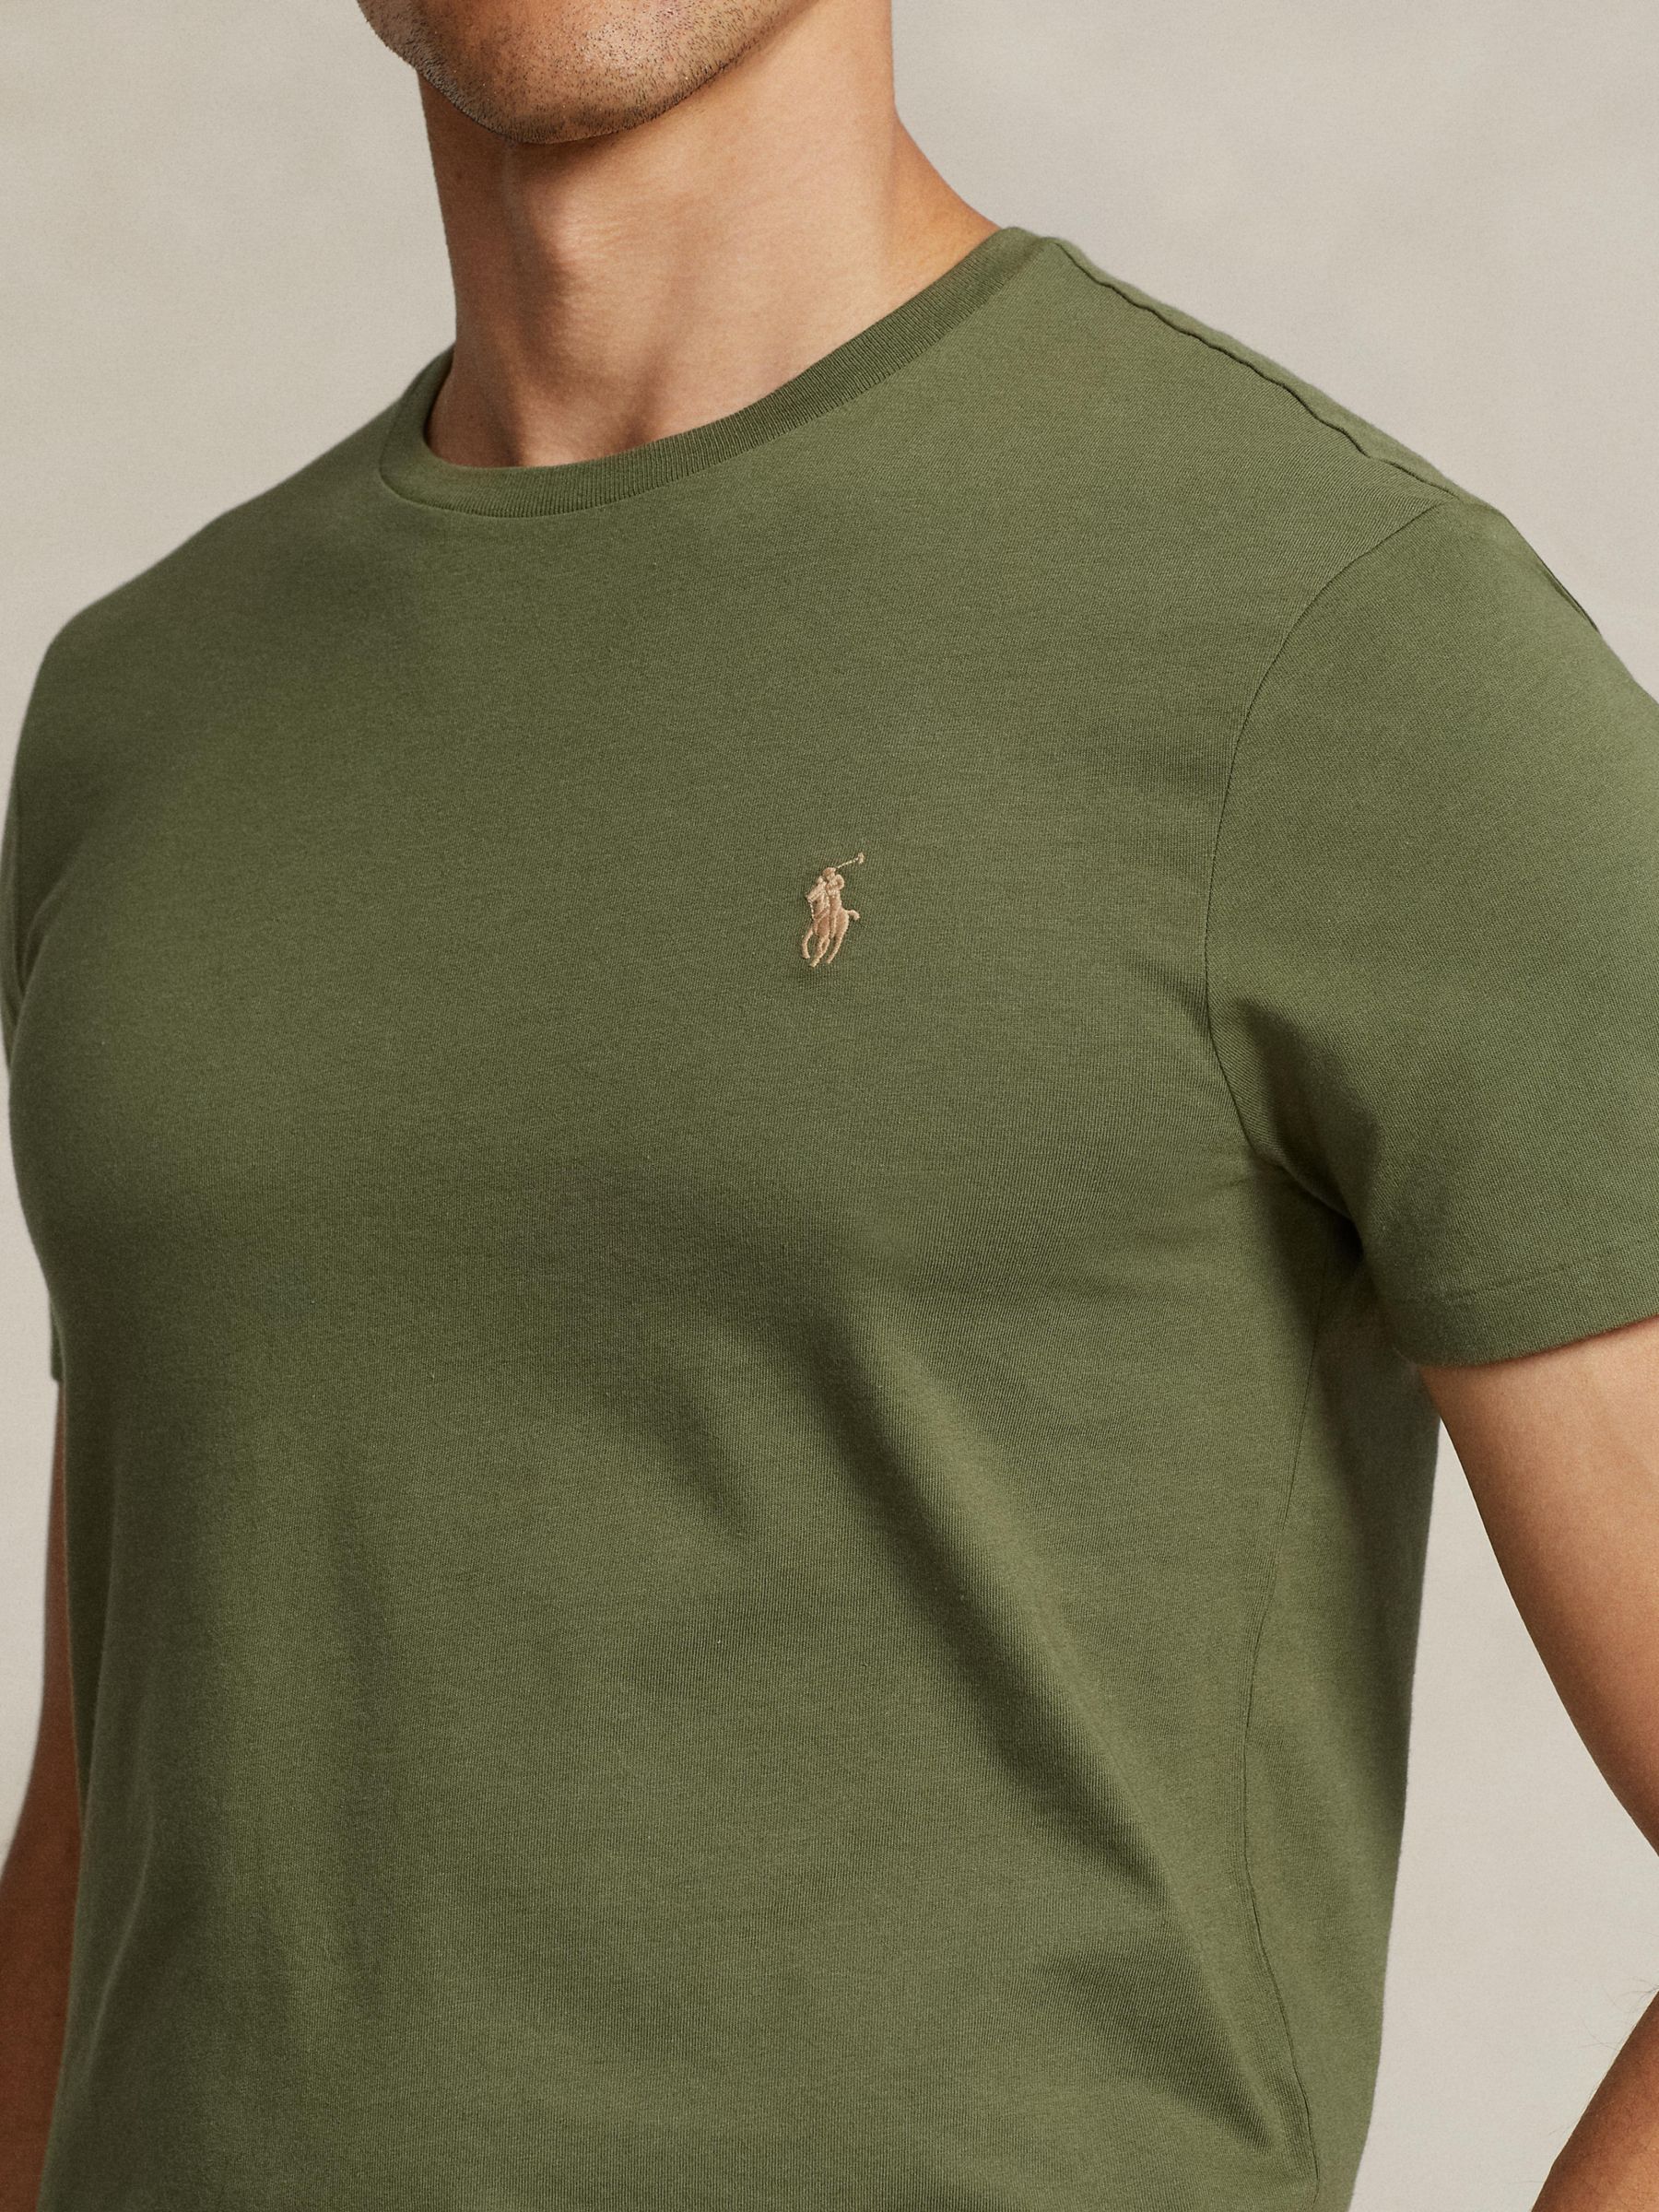 Polo Ralph Lauren Cotton T-Shirt, Green, M